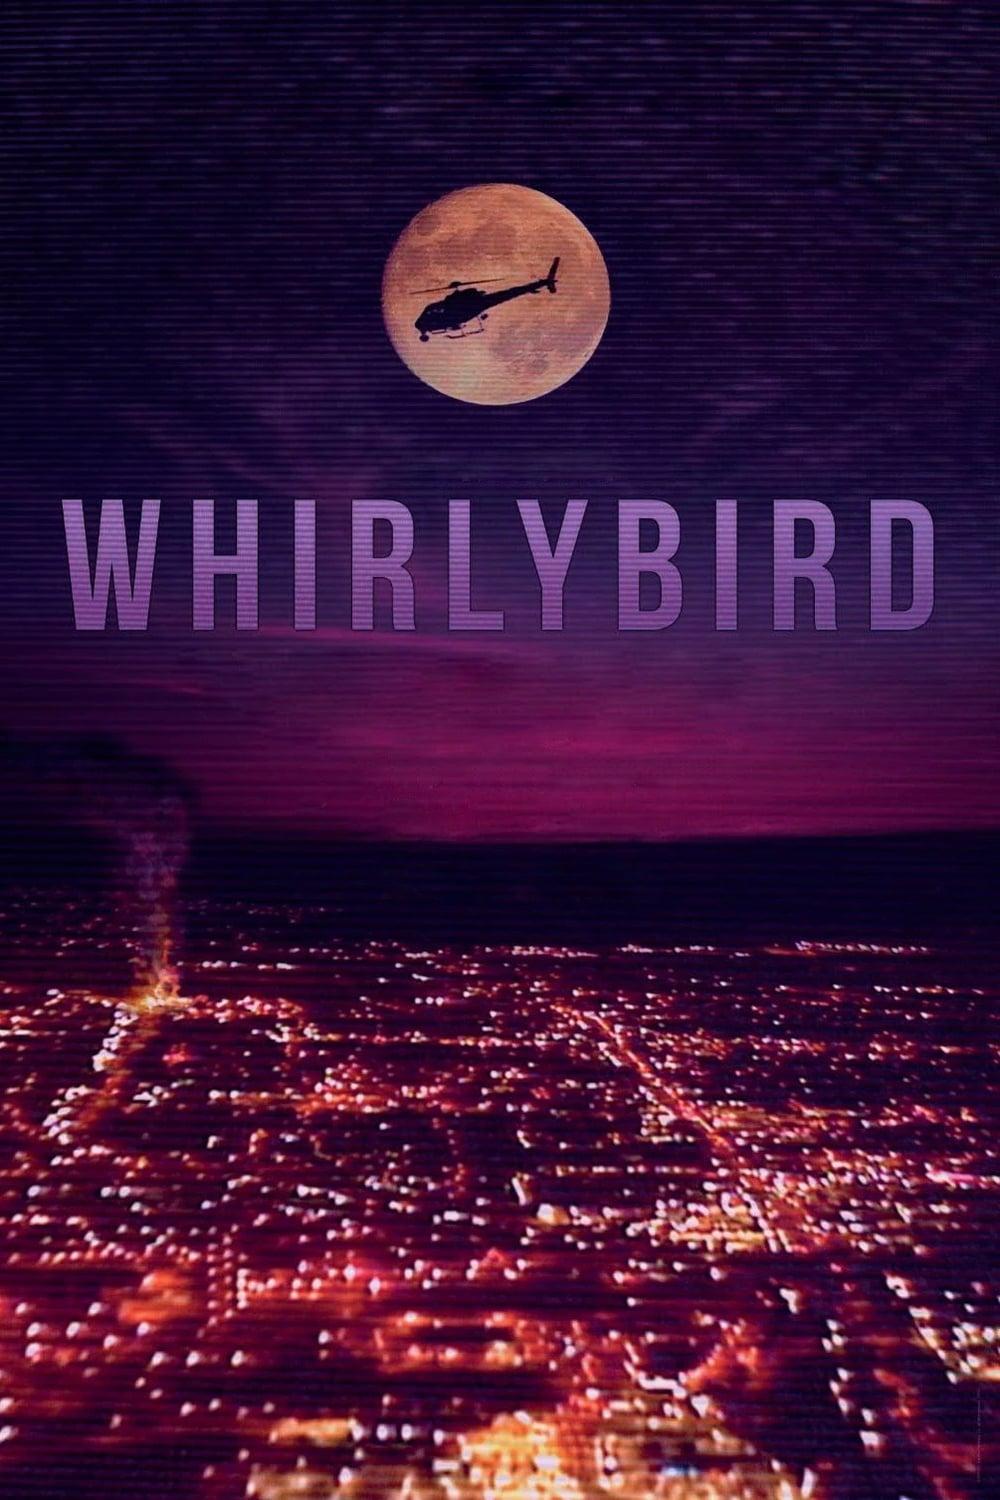 Whirlybird poster